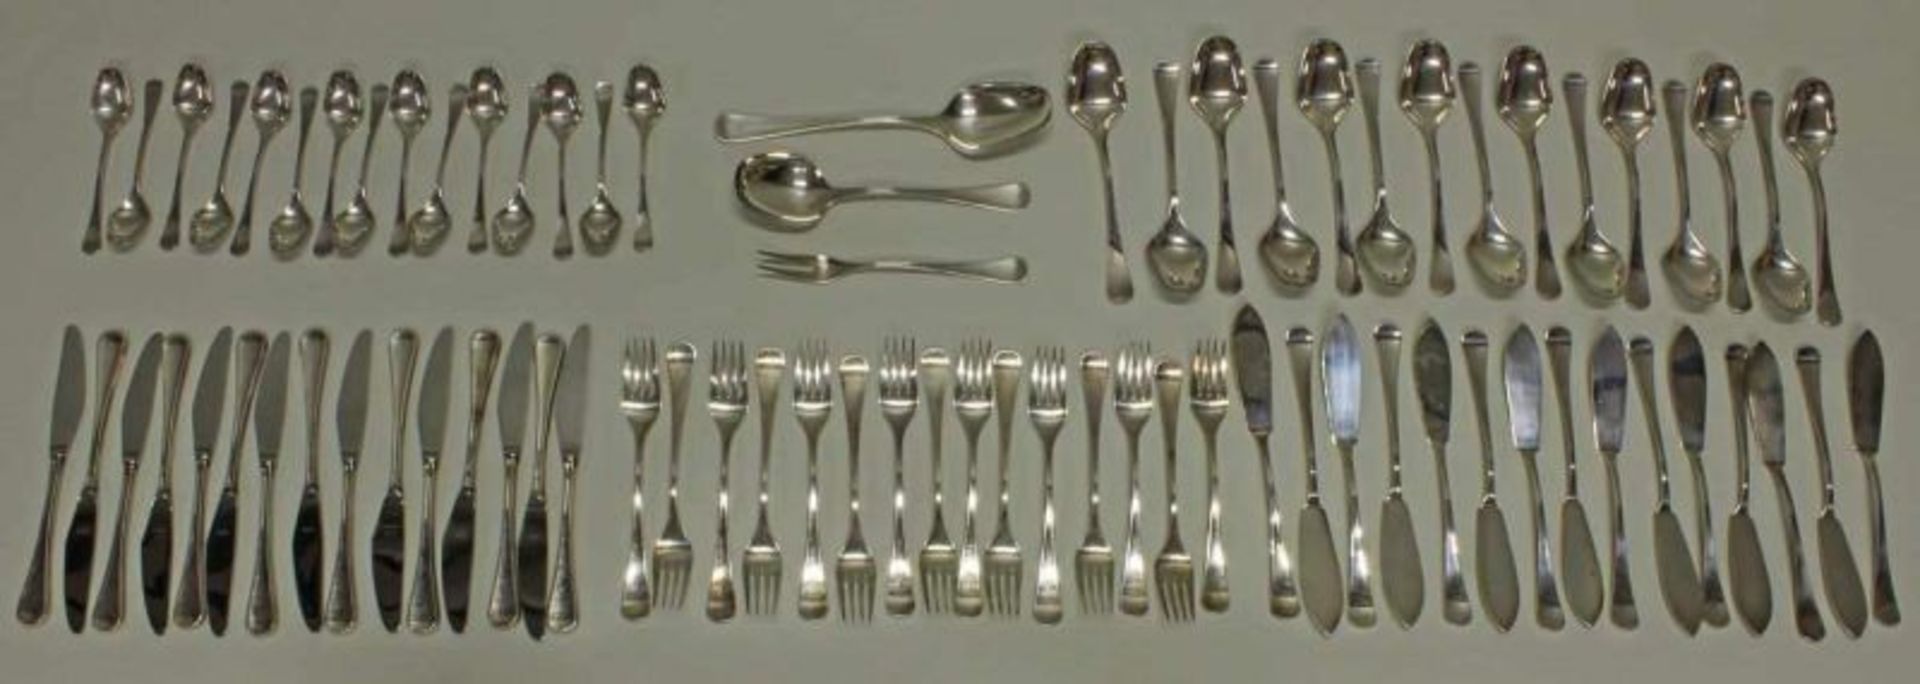 Besteck, Silber 925, Robbe & Berking, Design 35: 15 Fischmesser, 15 Gabeln, 15 Messer, 15 Löffel, 15